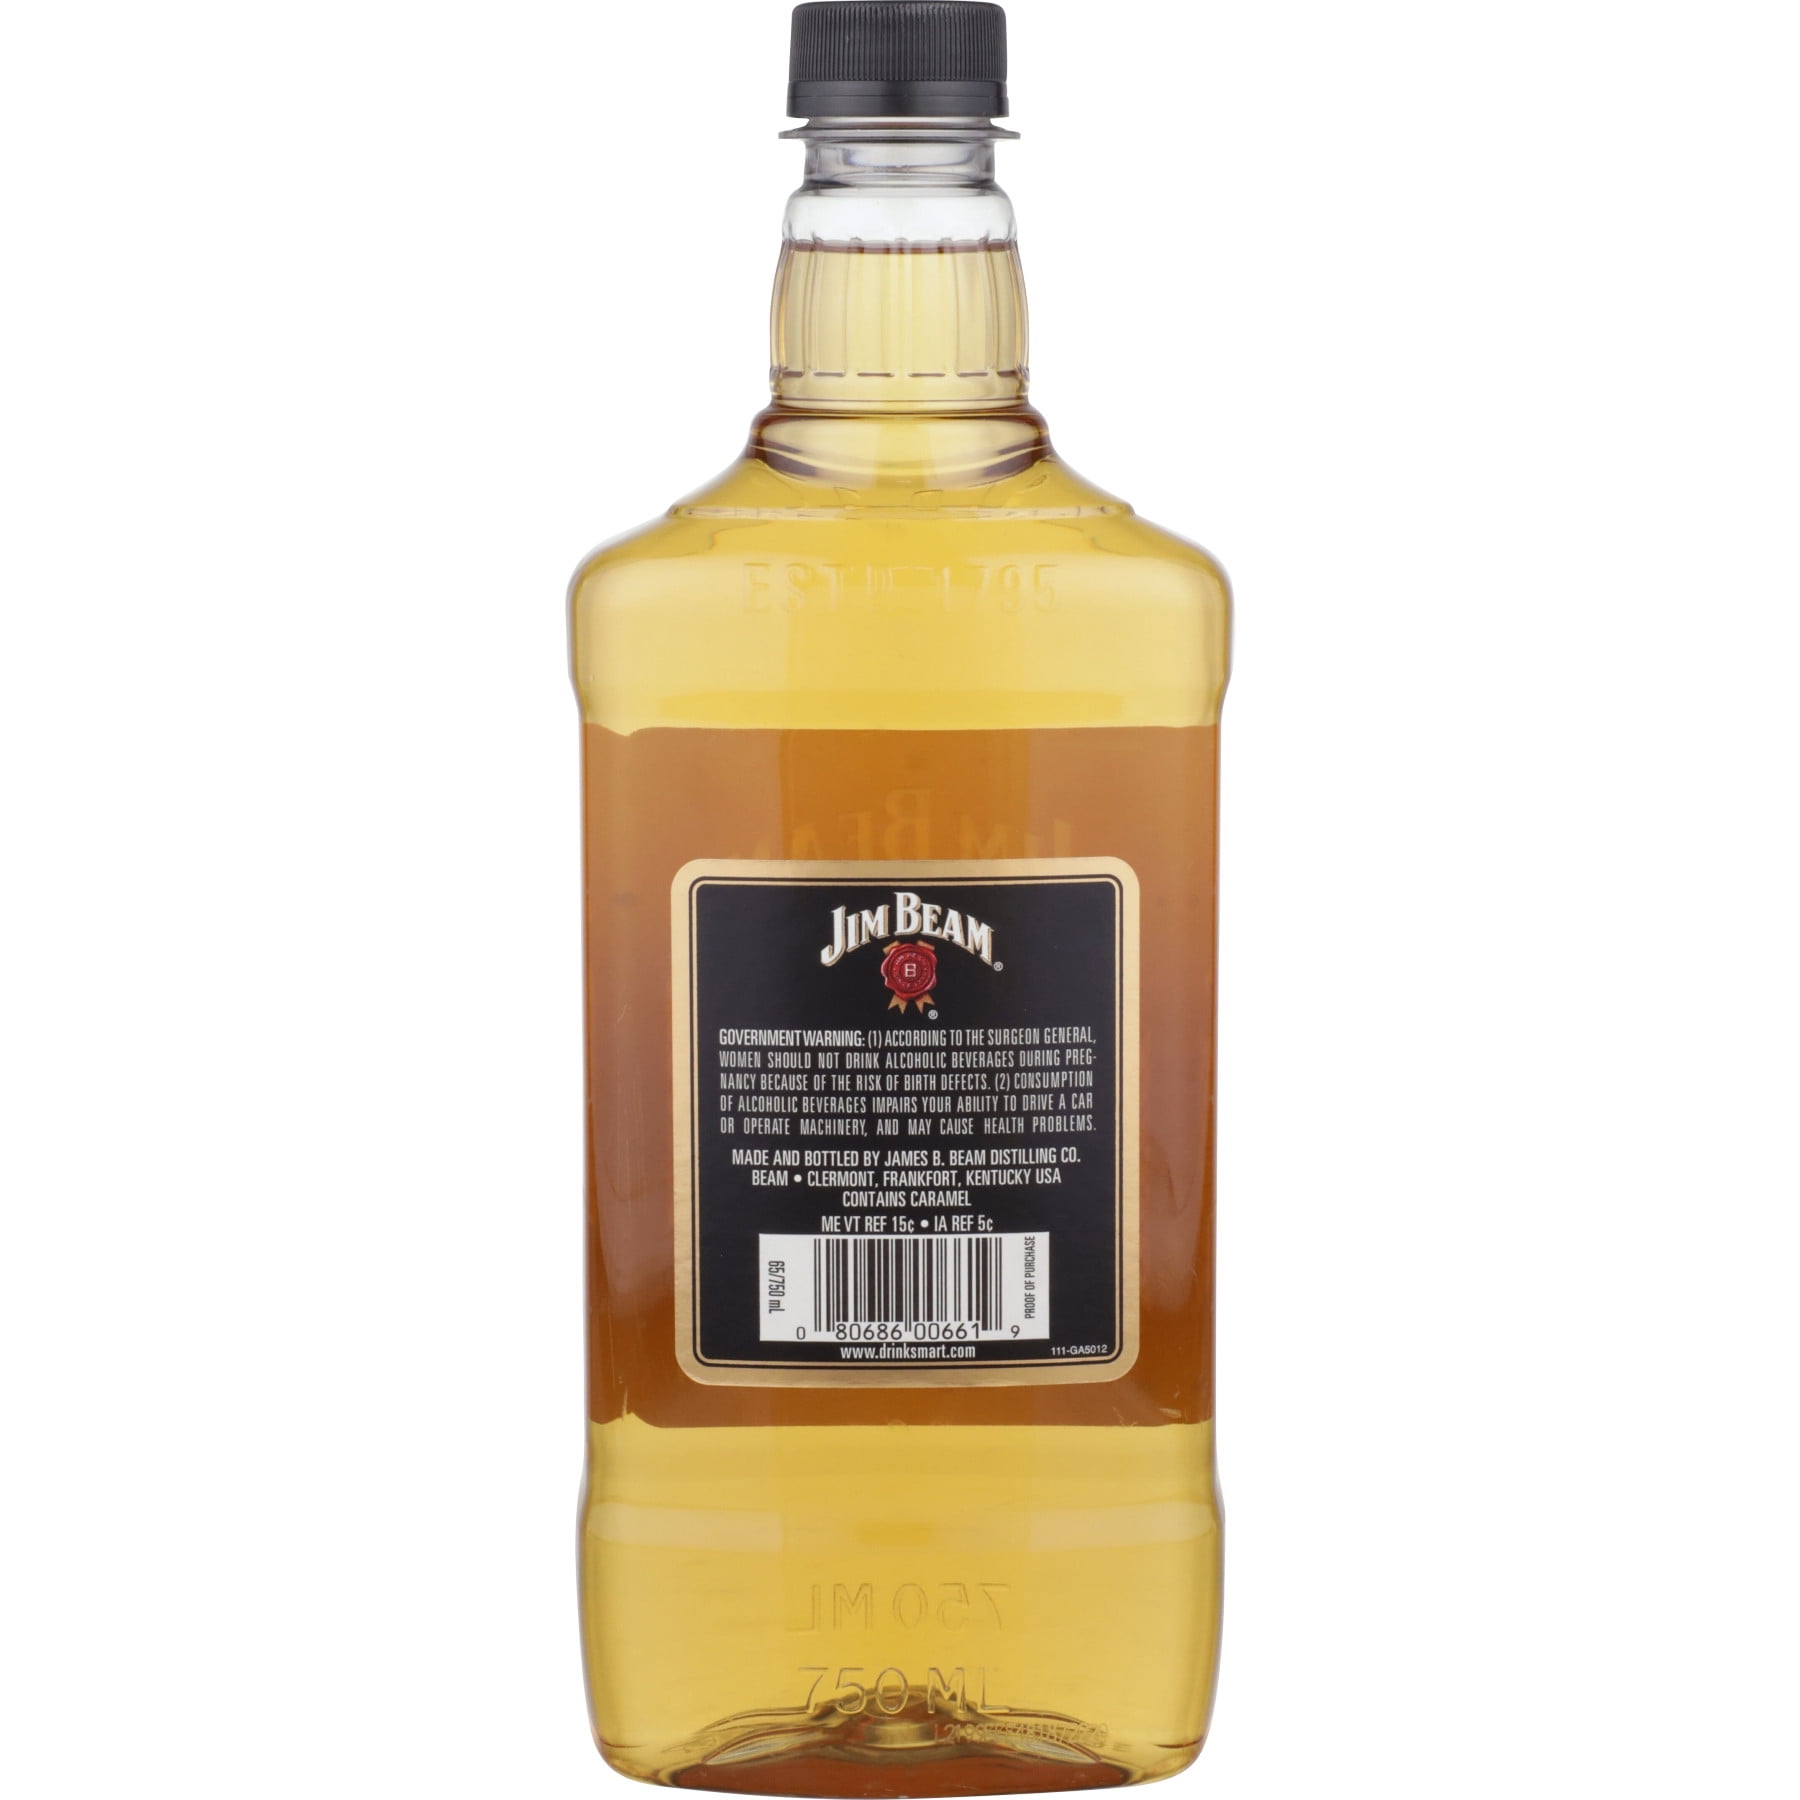 Jim Beam Honey Flavored Whiskey, 750 ml PET Bottle, ABV 32.5%